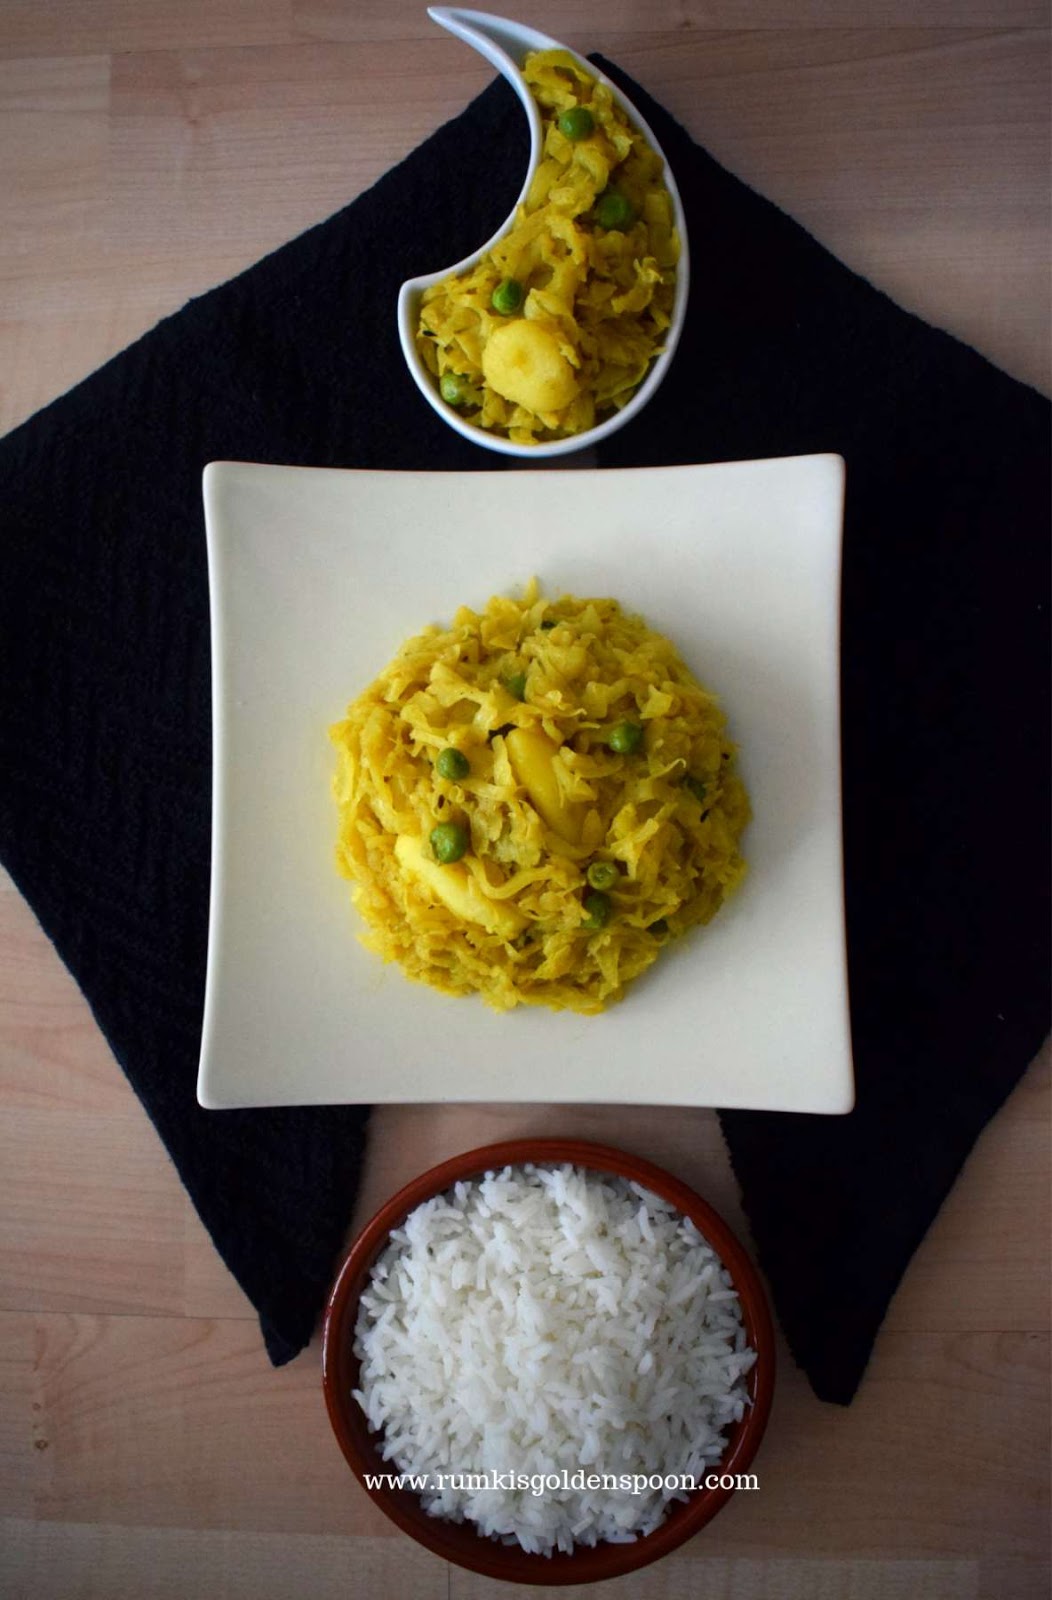 Bandhakopir Ghonto, Bandhakopir Ghonto recipe, cabbage stir fry, cabbage stir fry Indian, cabbage curry, cabbage curry Indian, Cabbage curry recipe, niramish badhakopi recipe, Bengali cabbage and potato curry, Bengali cabbage curry, Cabbage curry bengali style, Pattagobi-aloo ki sukhi sabzi, sabji, vegan cabbage curry, badhakopir tarkari, cabbage sabzi, cabbage sabzi recipe, cabbage sabzi for chapati, cabbage ki sabji, cabbage sabji, niramish bandhakopir tarkari, bengali traditional food, traditional food of Bengali, traditional bengali food, bengali vegetable recipe, Cabbage recipe Indian, Cabbage peas curry, vegetarian recipes of india, vegan recipes of india, Rumki's Golden Spoon